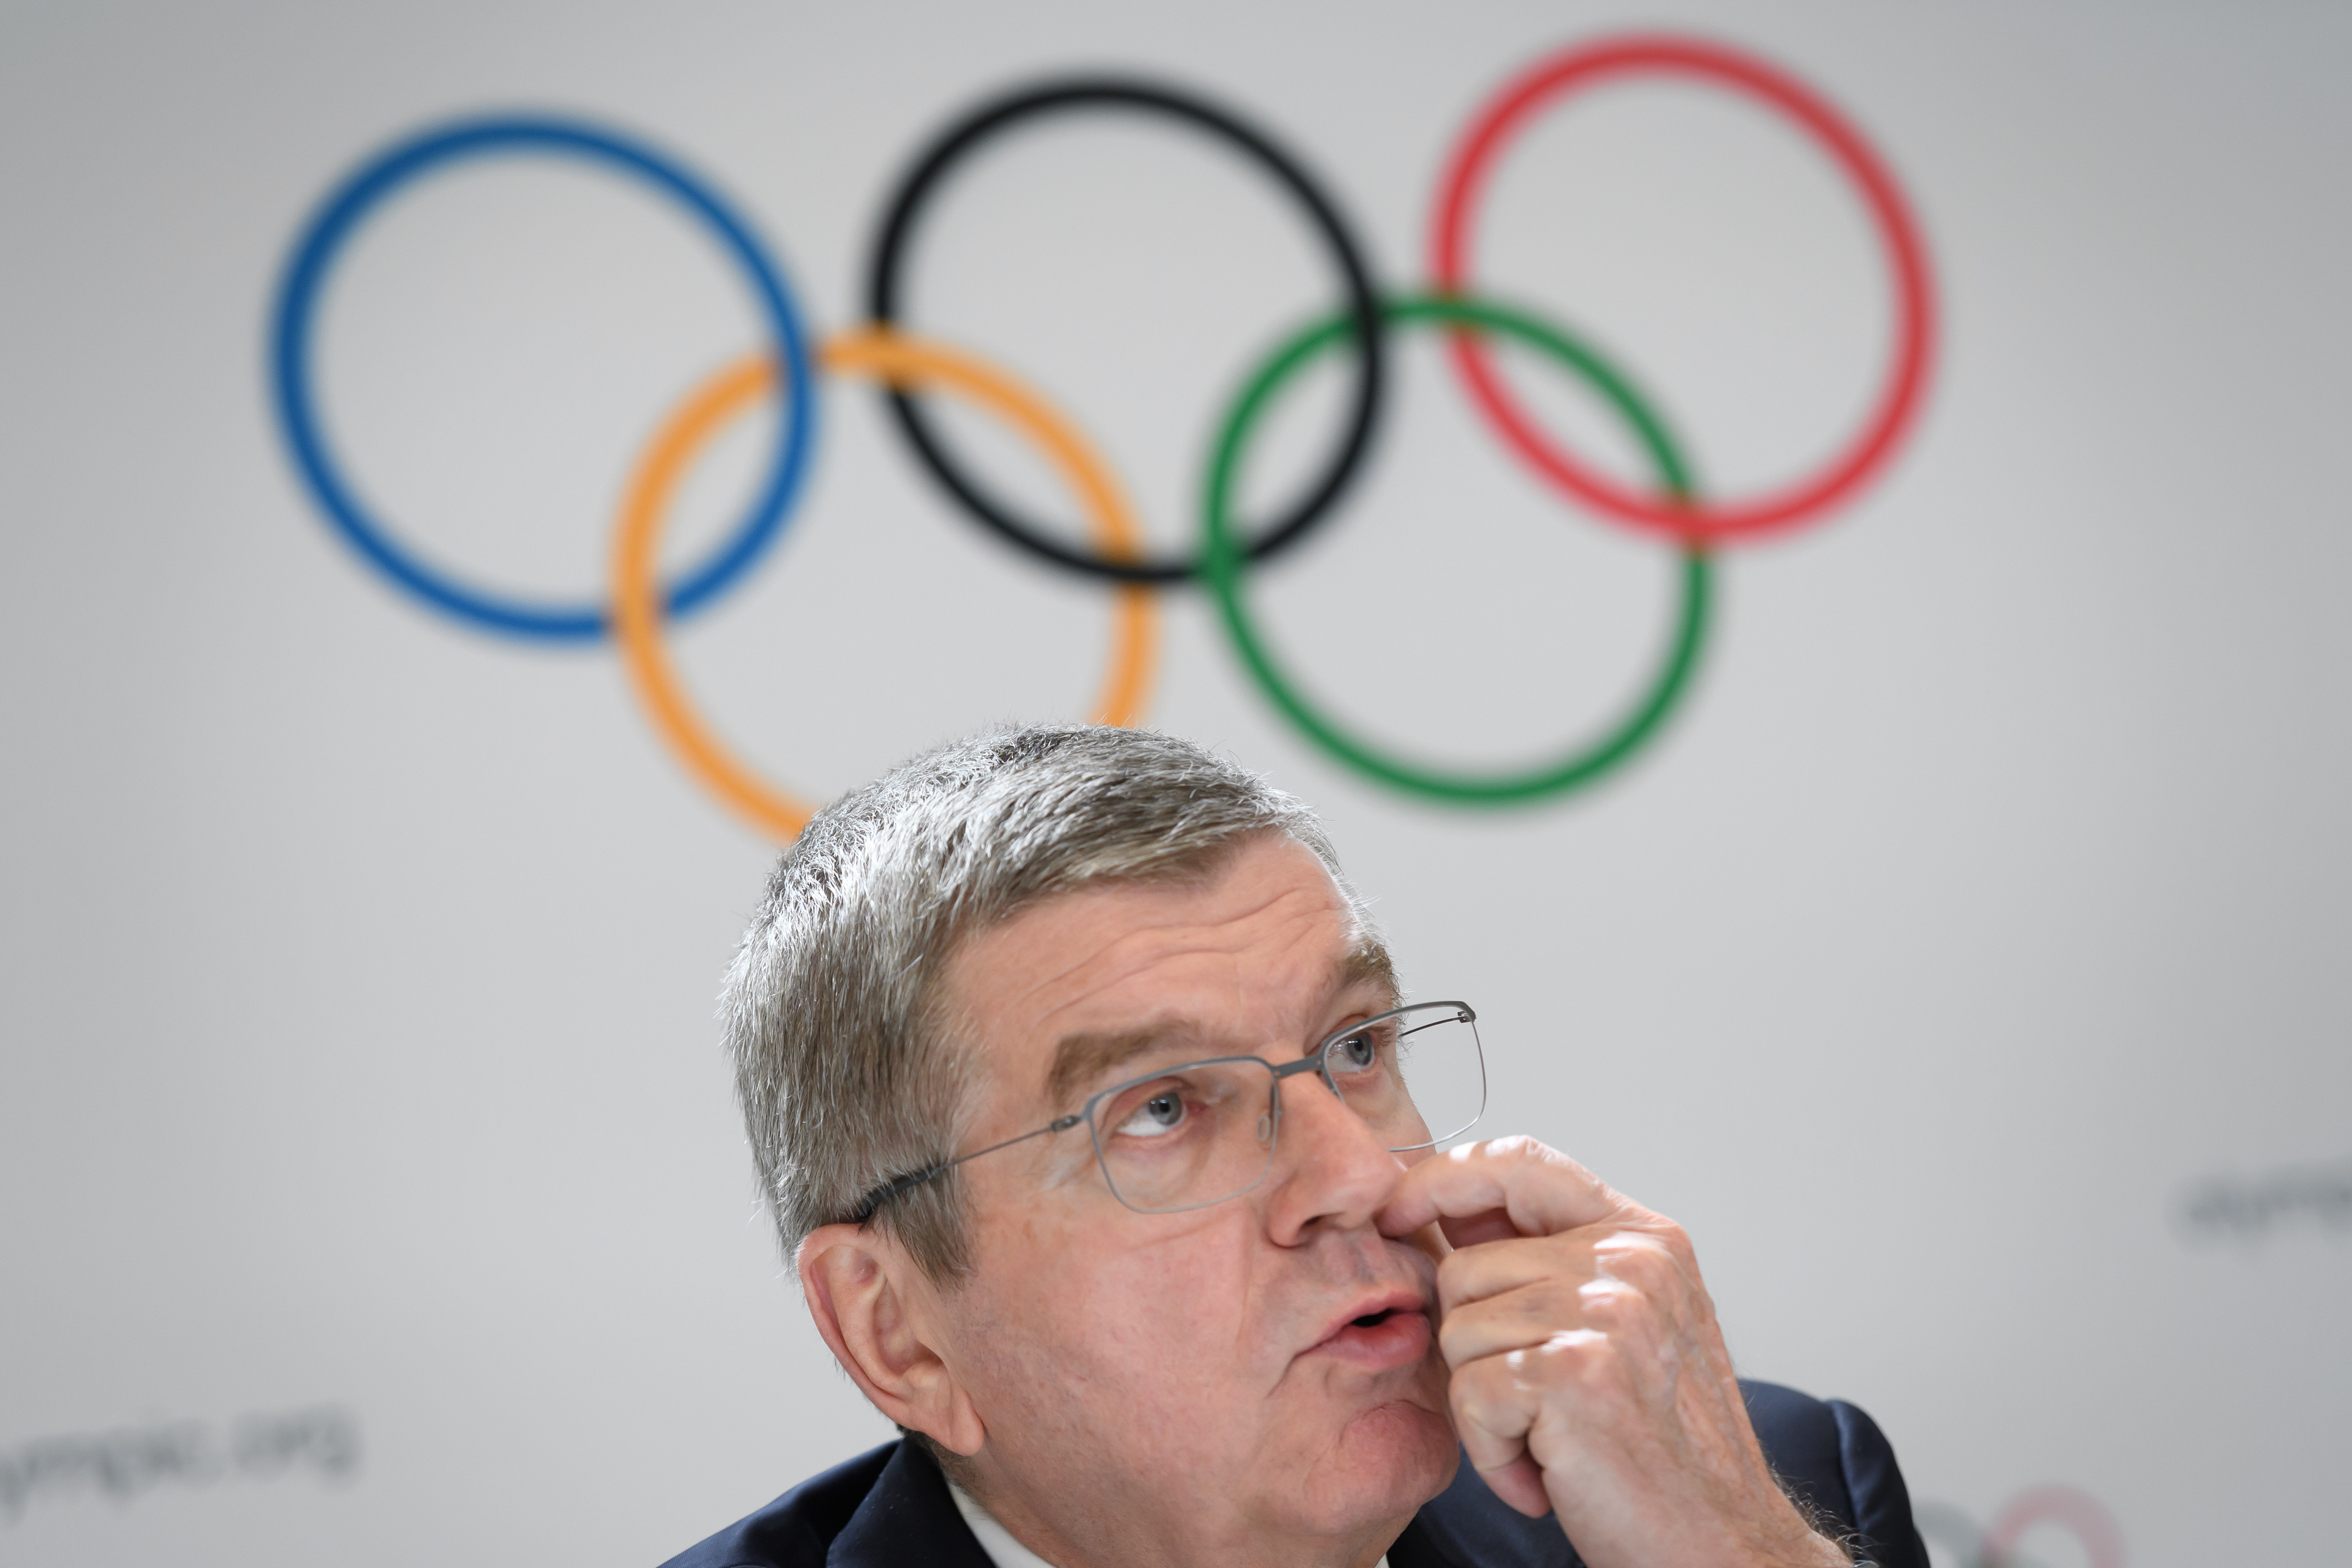 A Nemzetközi Olimpiai Bizottság elnöke szerint nem lenne tisztességes lemondani a tokiói olimpiát